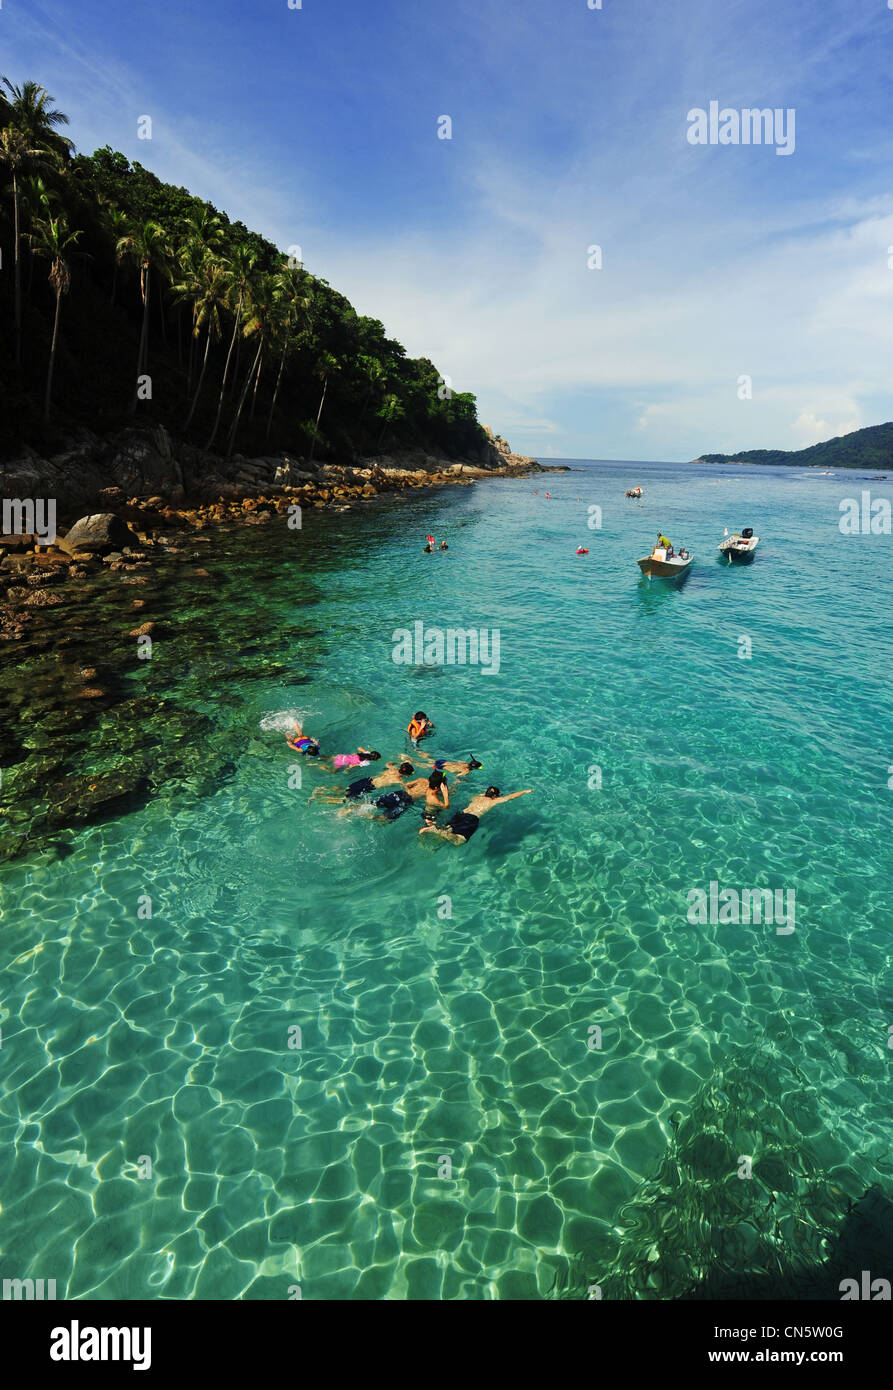 Malaysia, Stato di Terengganu, Perhentian Islands, Perhentian Kecil, i turisti con la possibilità di fare snorkeling in acque turchesi Foto Stock